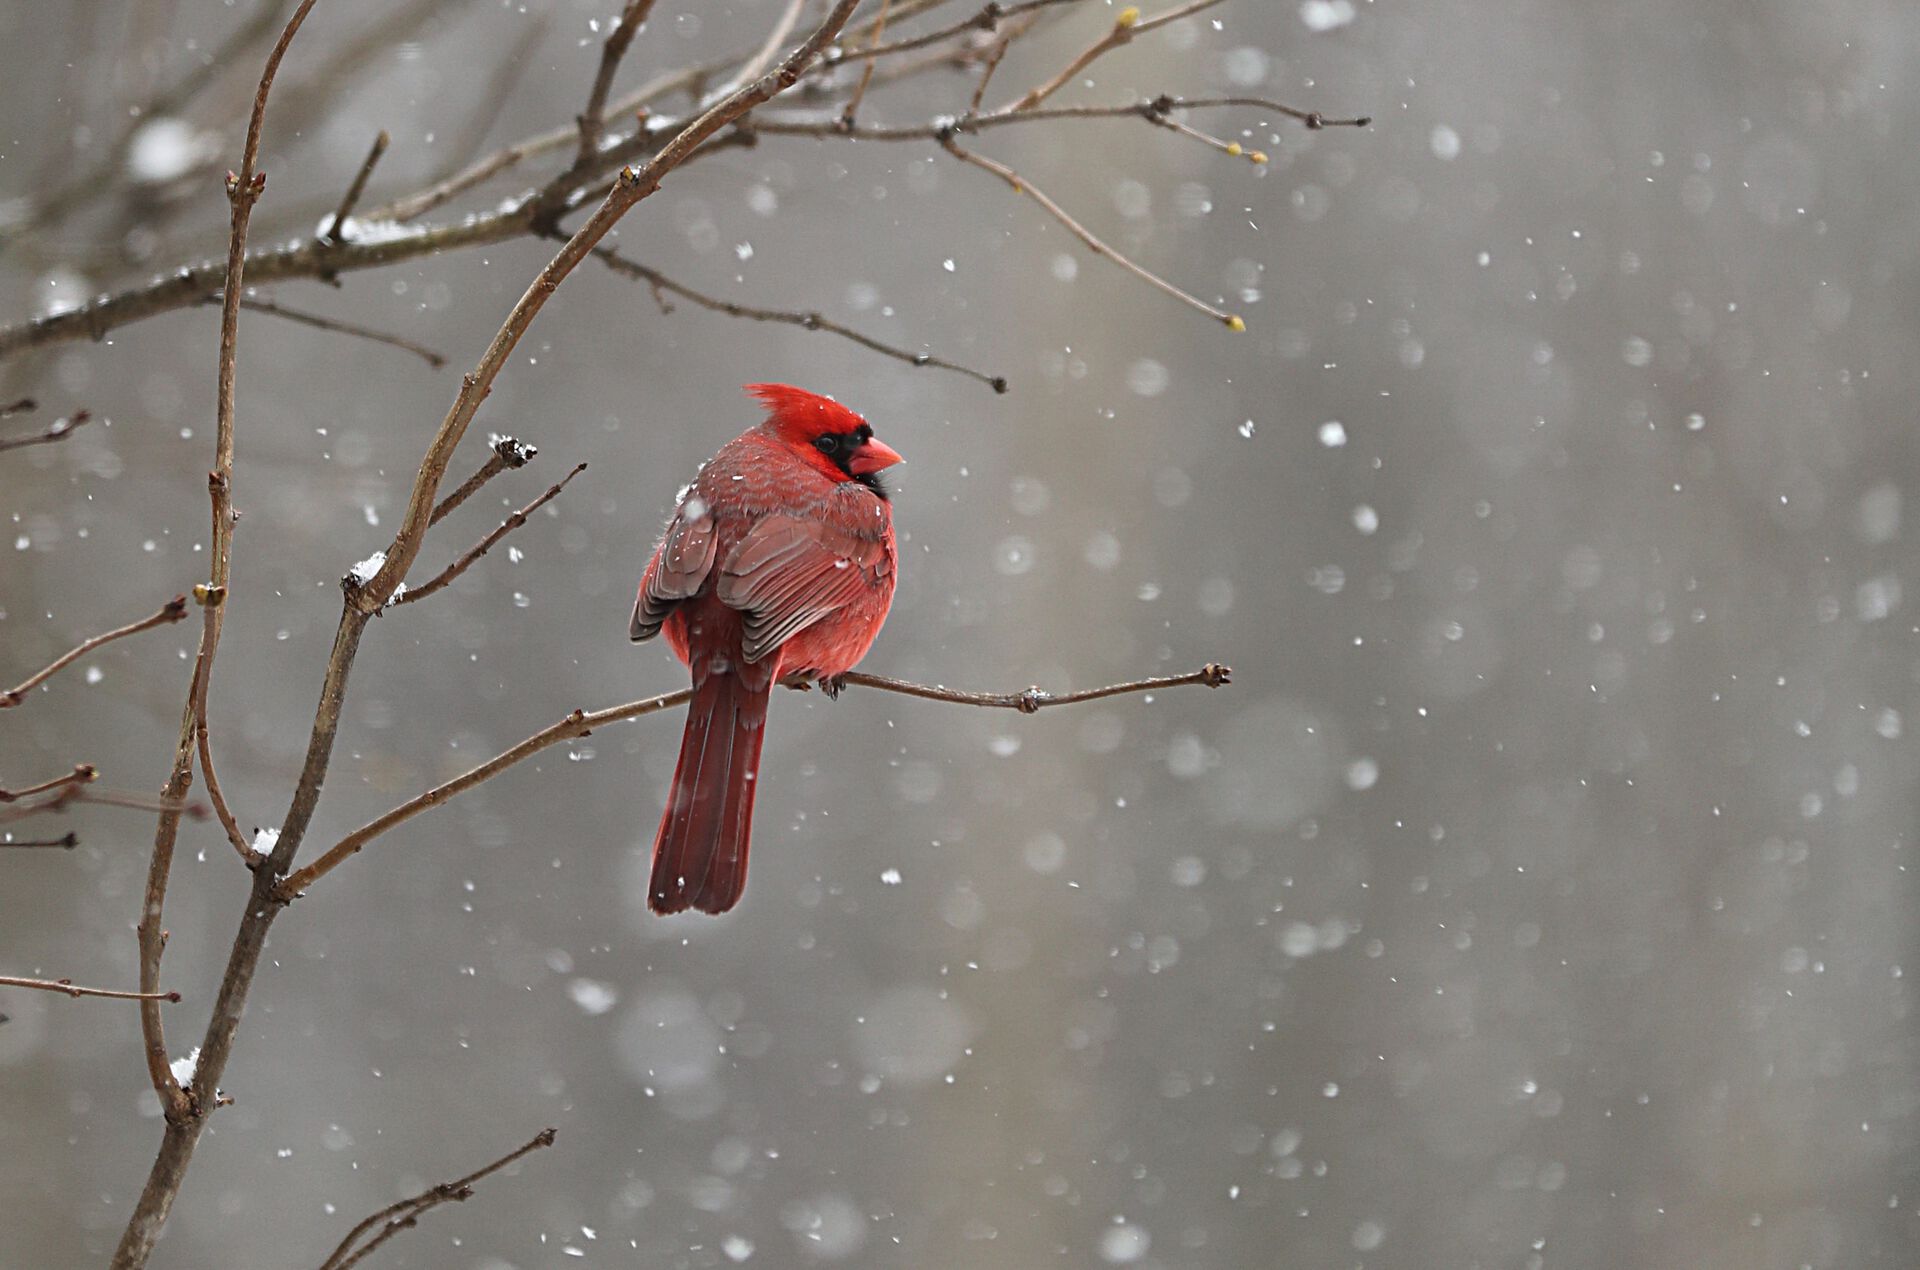 Image may contain: Bird, Twig, Beak, Snow, Cardinal.